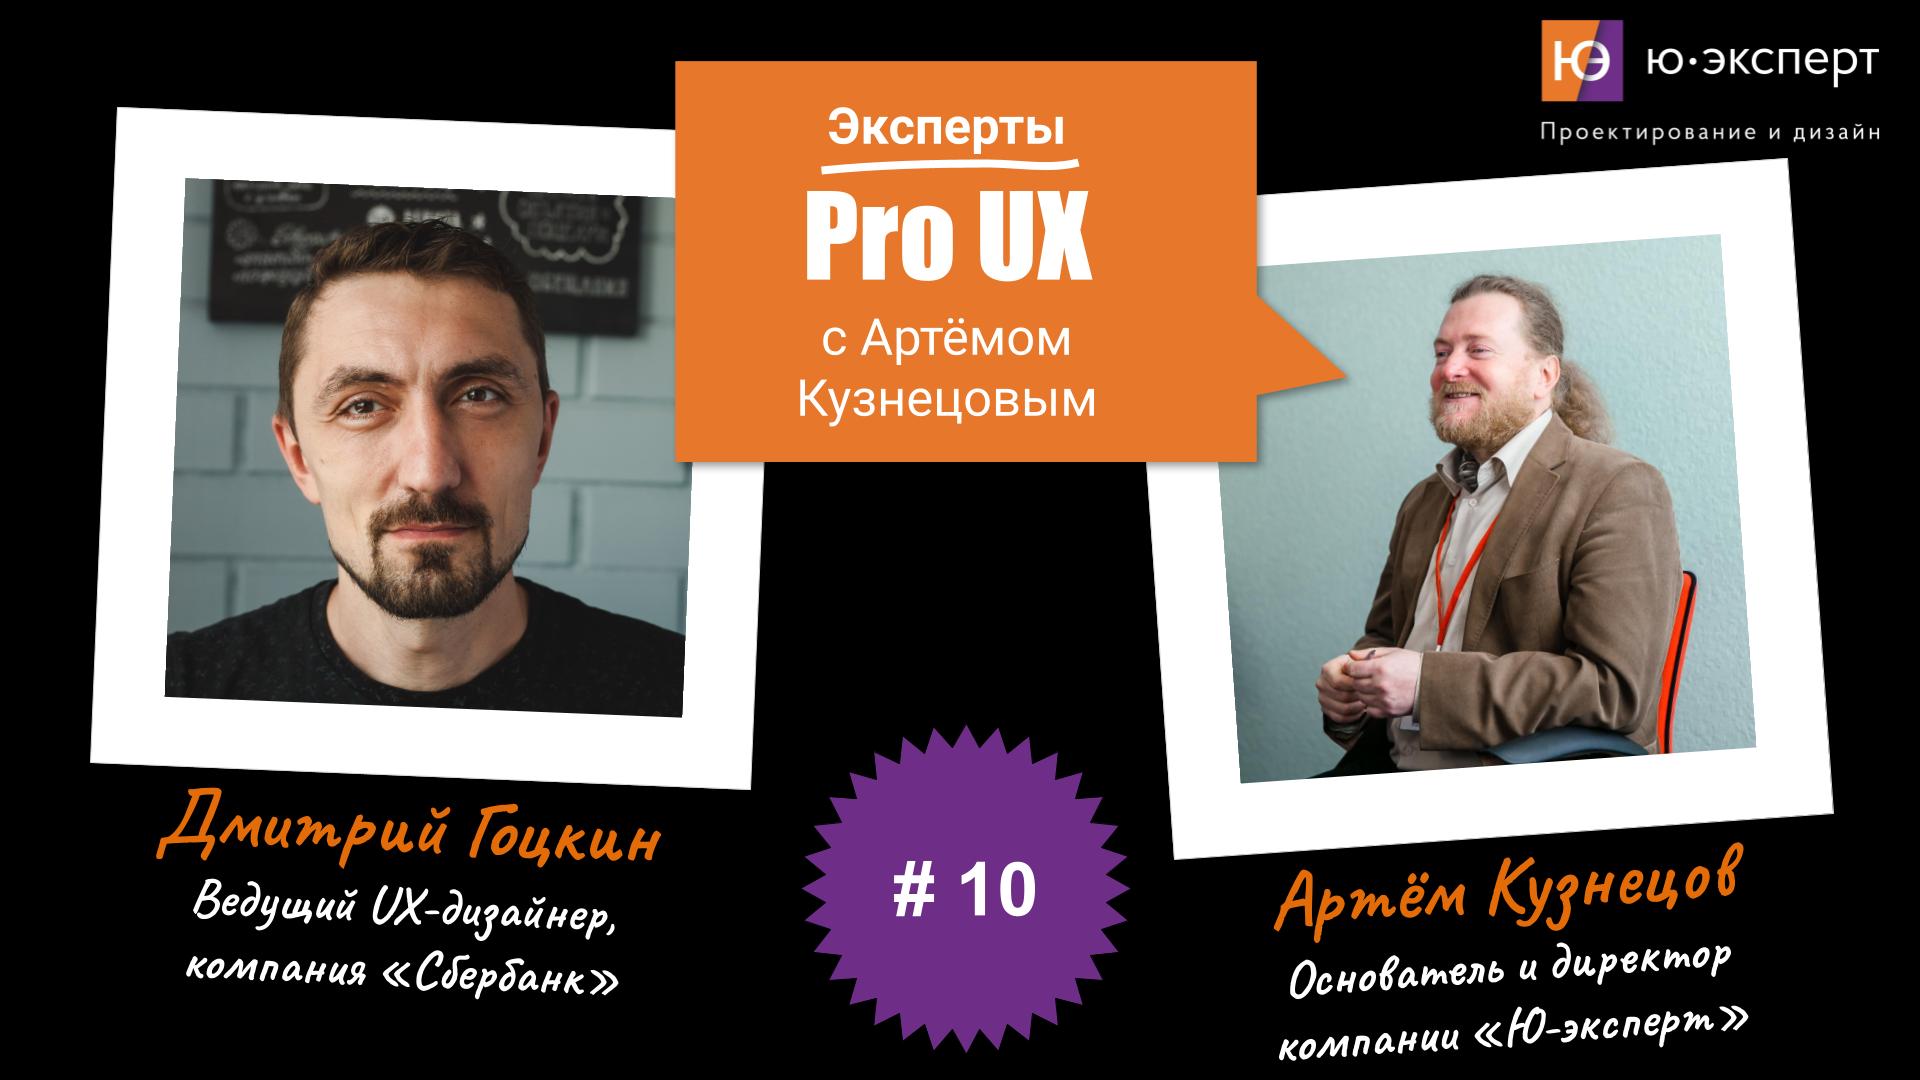 Артем Кузнецов Pro UX #10 с Дмитрием Гоцкиным. Часть 1.